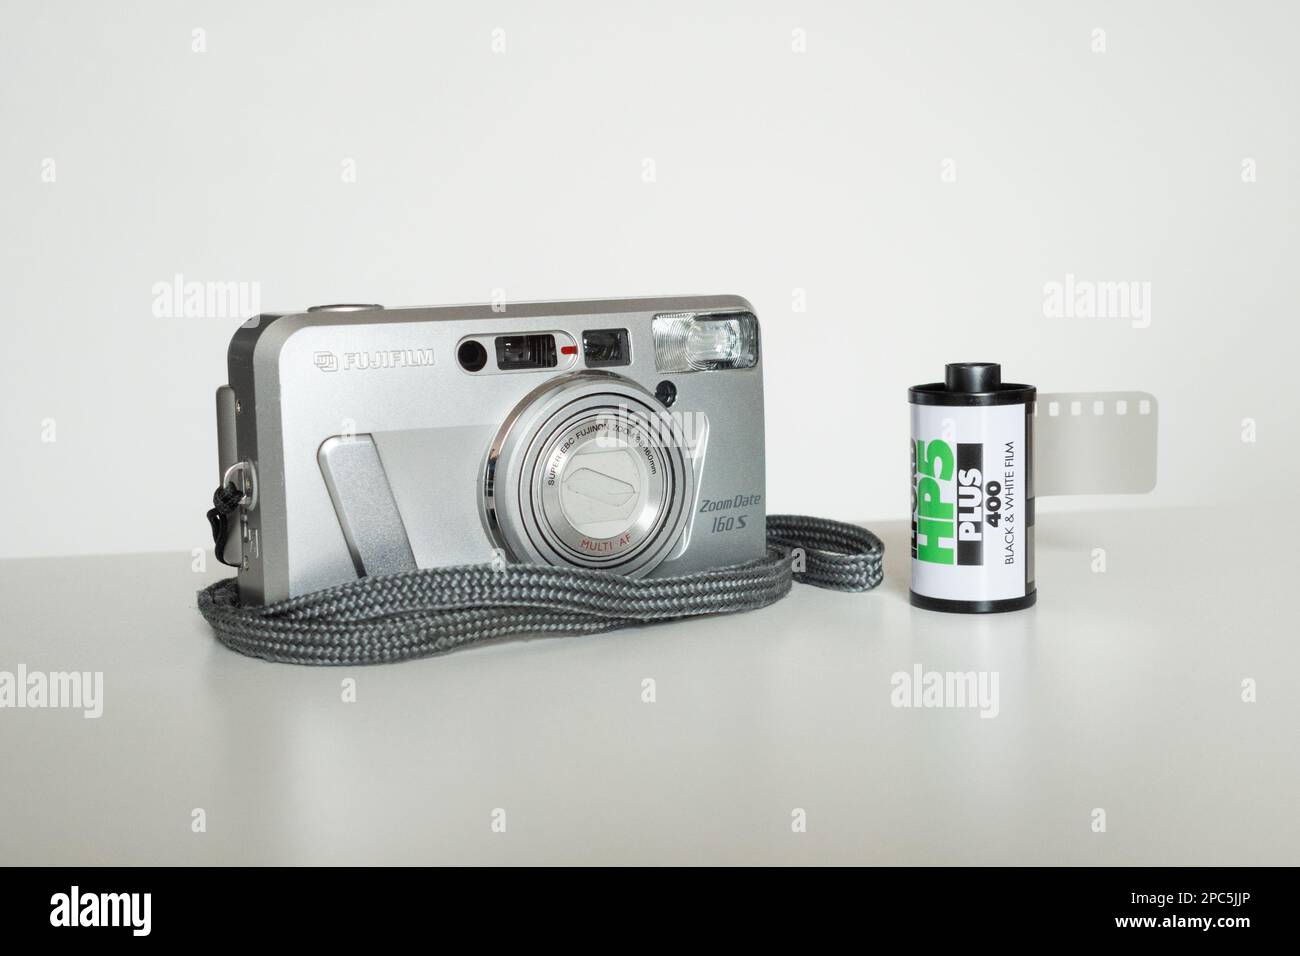 Fujifilm Zoom Date 160S telecamera compatta con cassetta o tanica da 35mm mm pronta per il caricamento Foto Stock